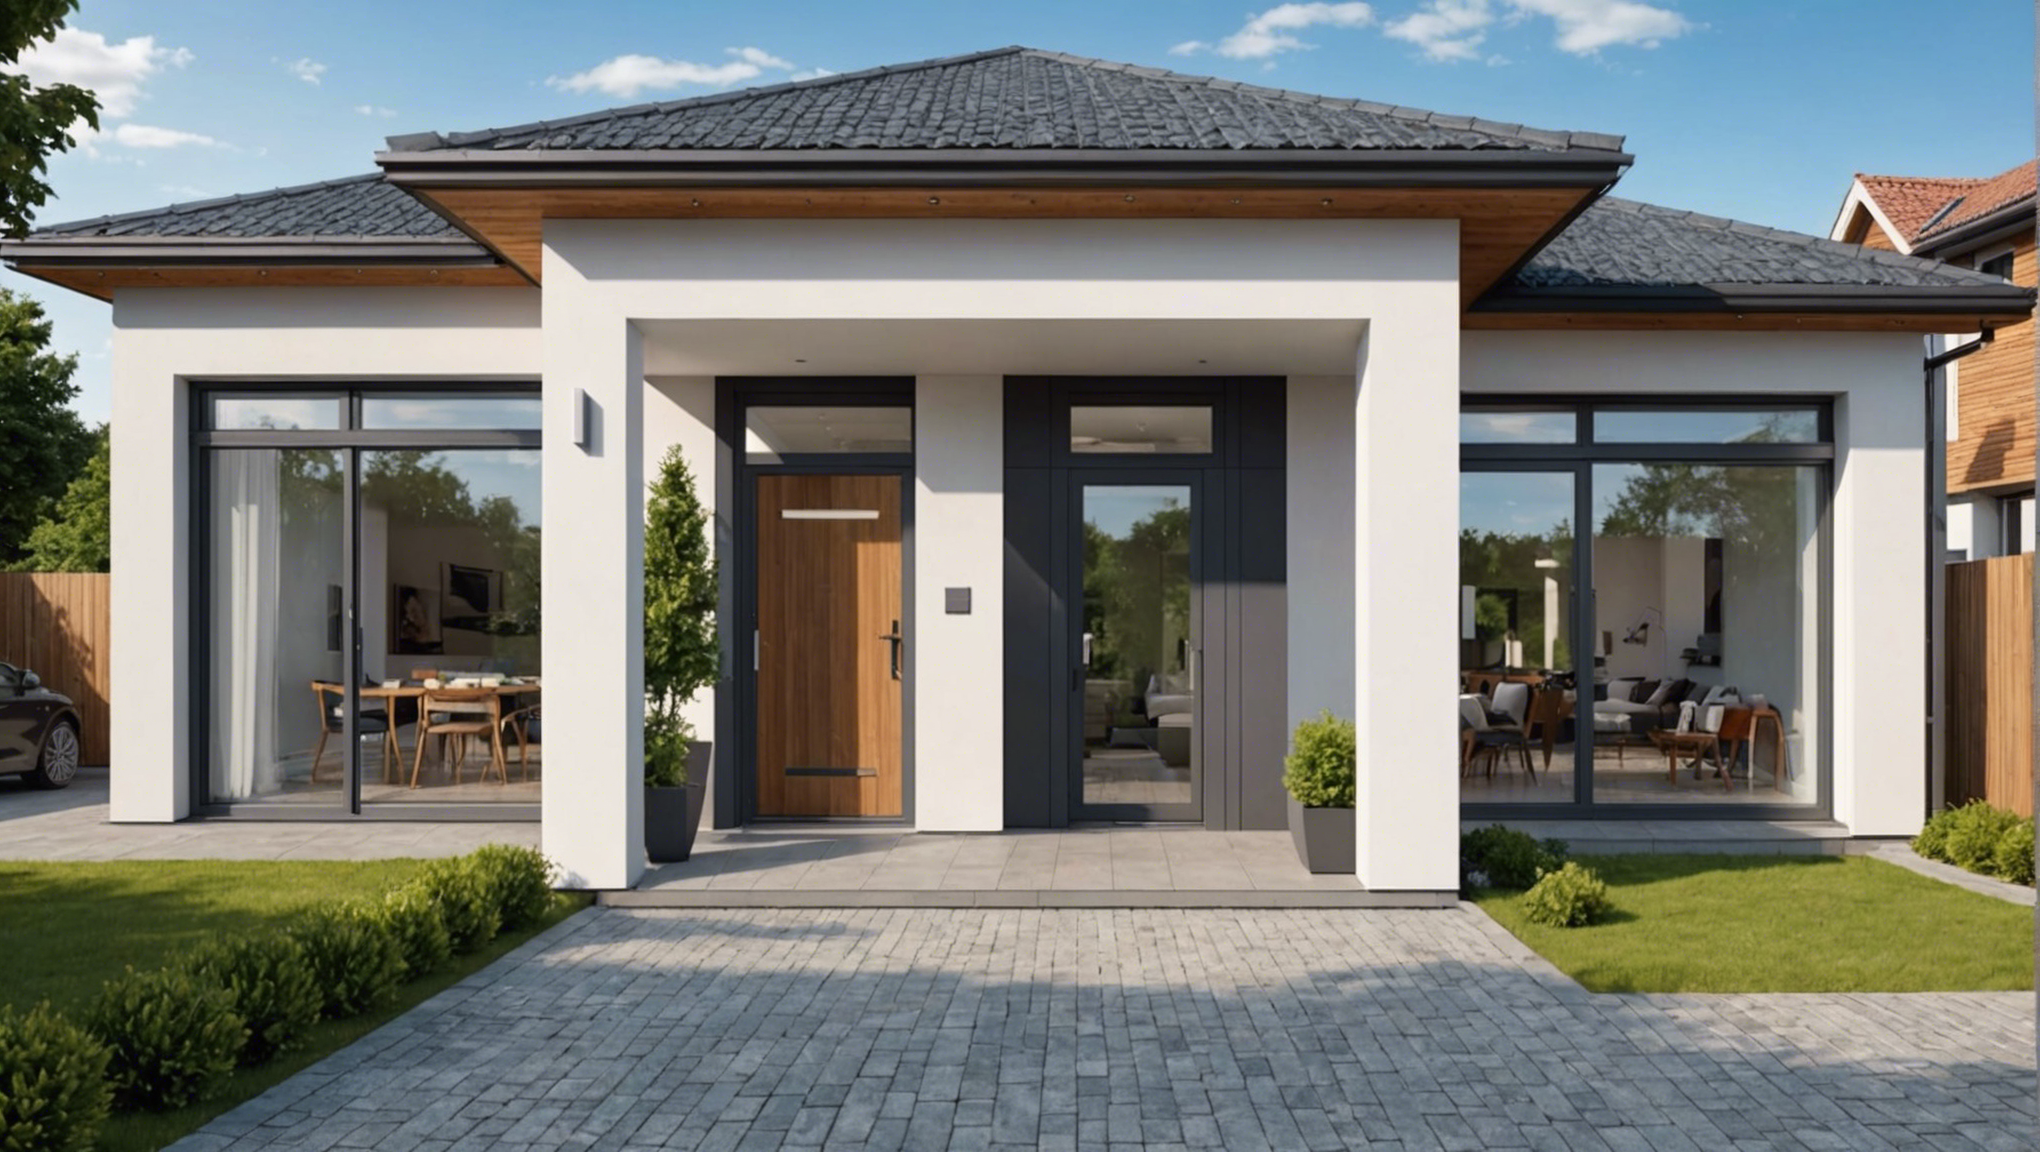 découvrez comment choisir l'entrée parfaite pour une maison moderne avec portail en suivant nos conseils et astuces. trouvez le portail idéal qui correspond à votre style et à vos besoins.